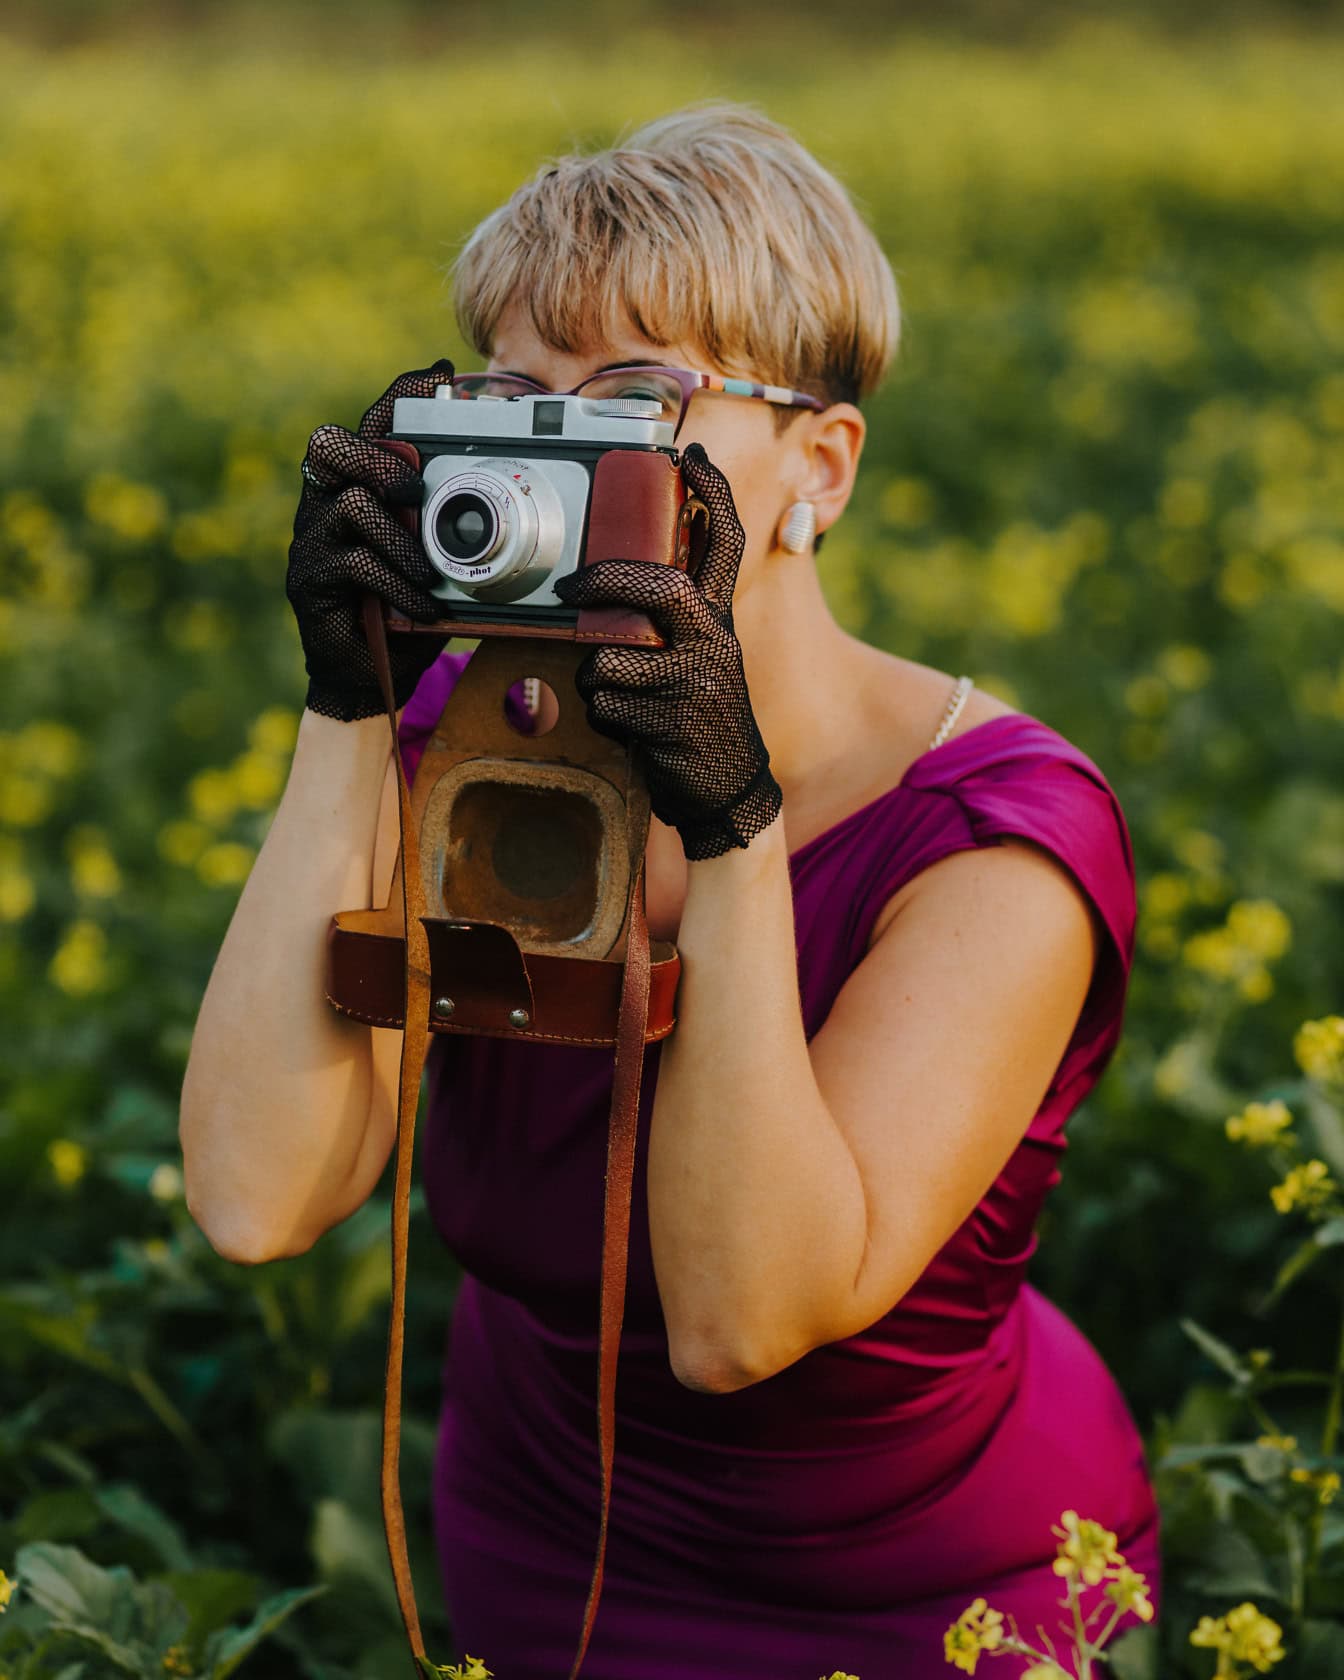 Fotografer wanita glamor dengan gaya rambut pirang pendek dalam gaun ungu saat membuat foto dengan kamera foto analog